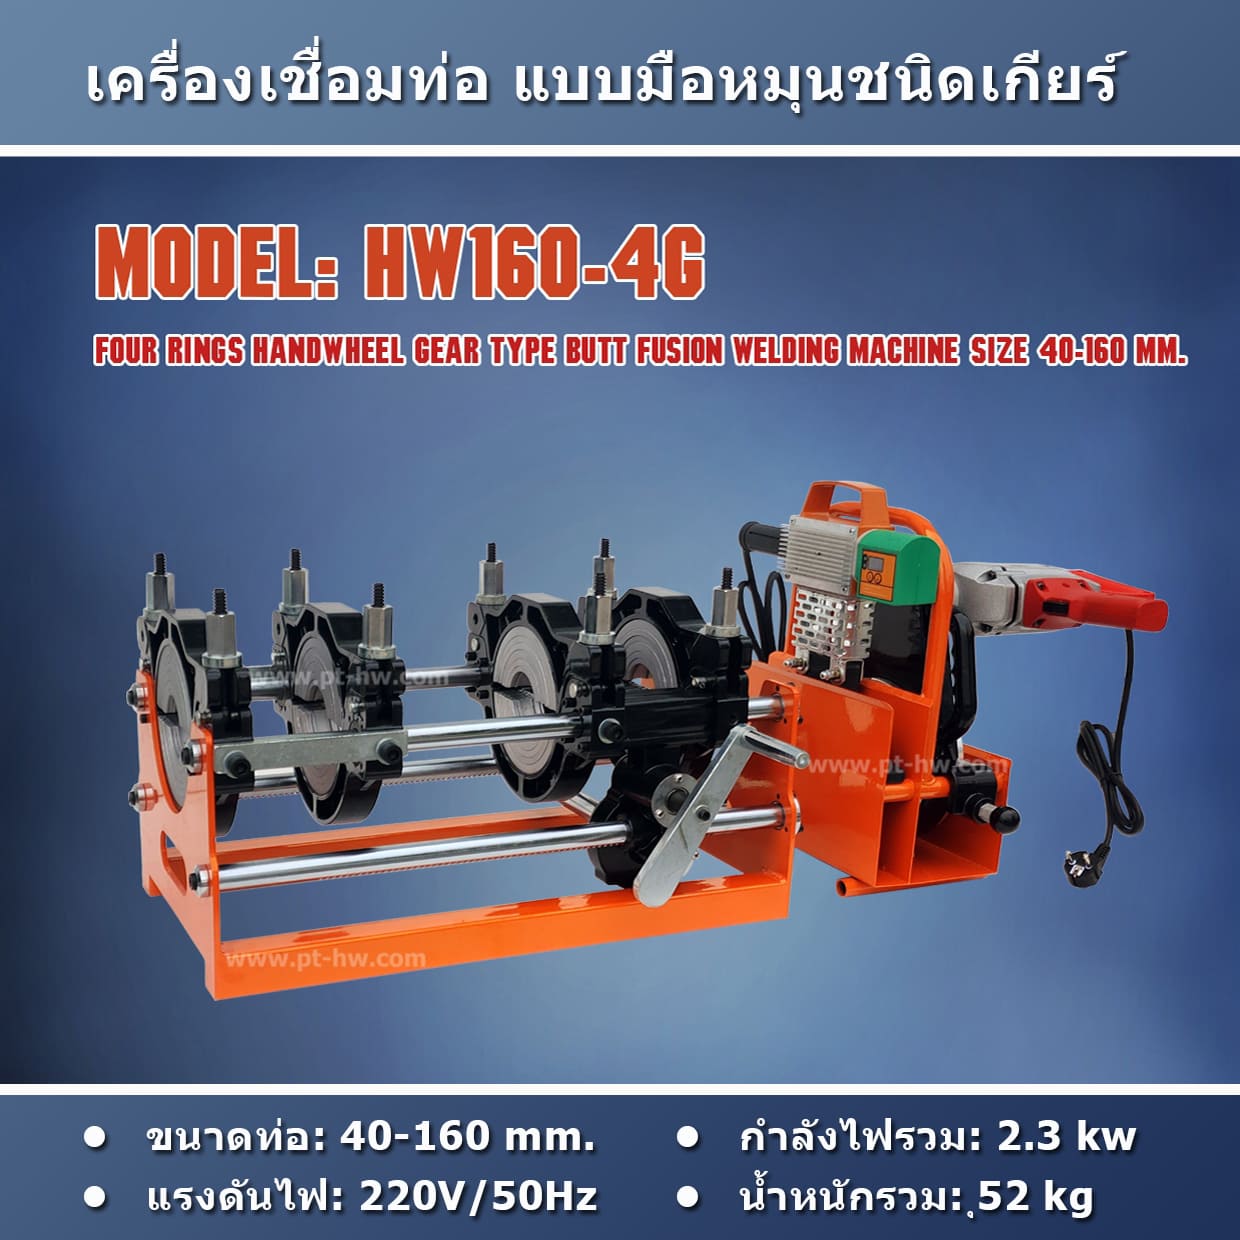 HW160-4G